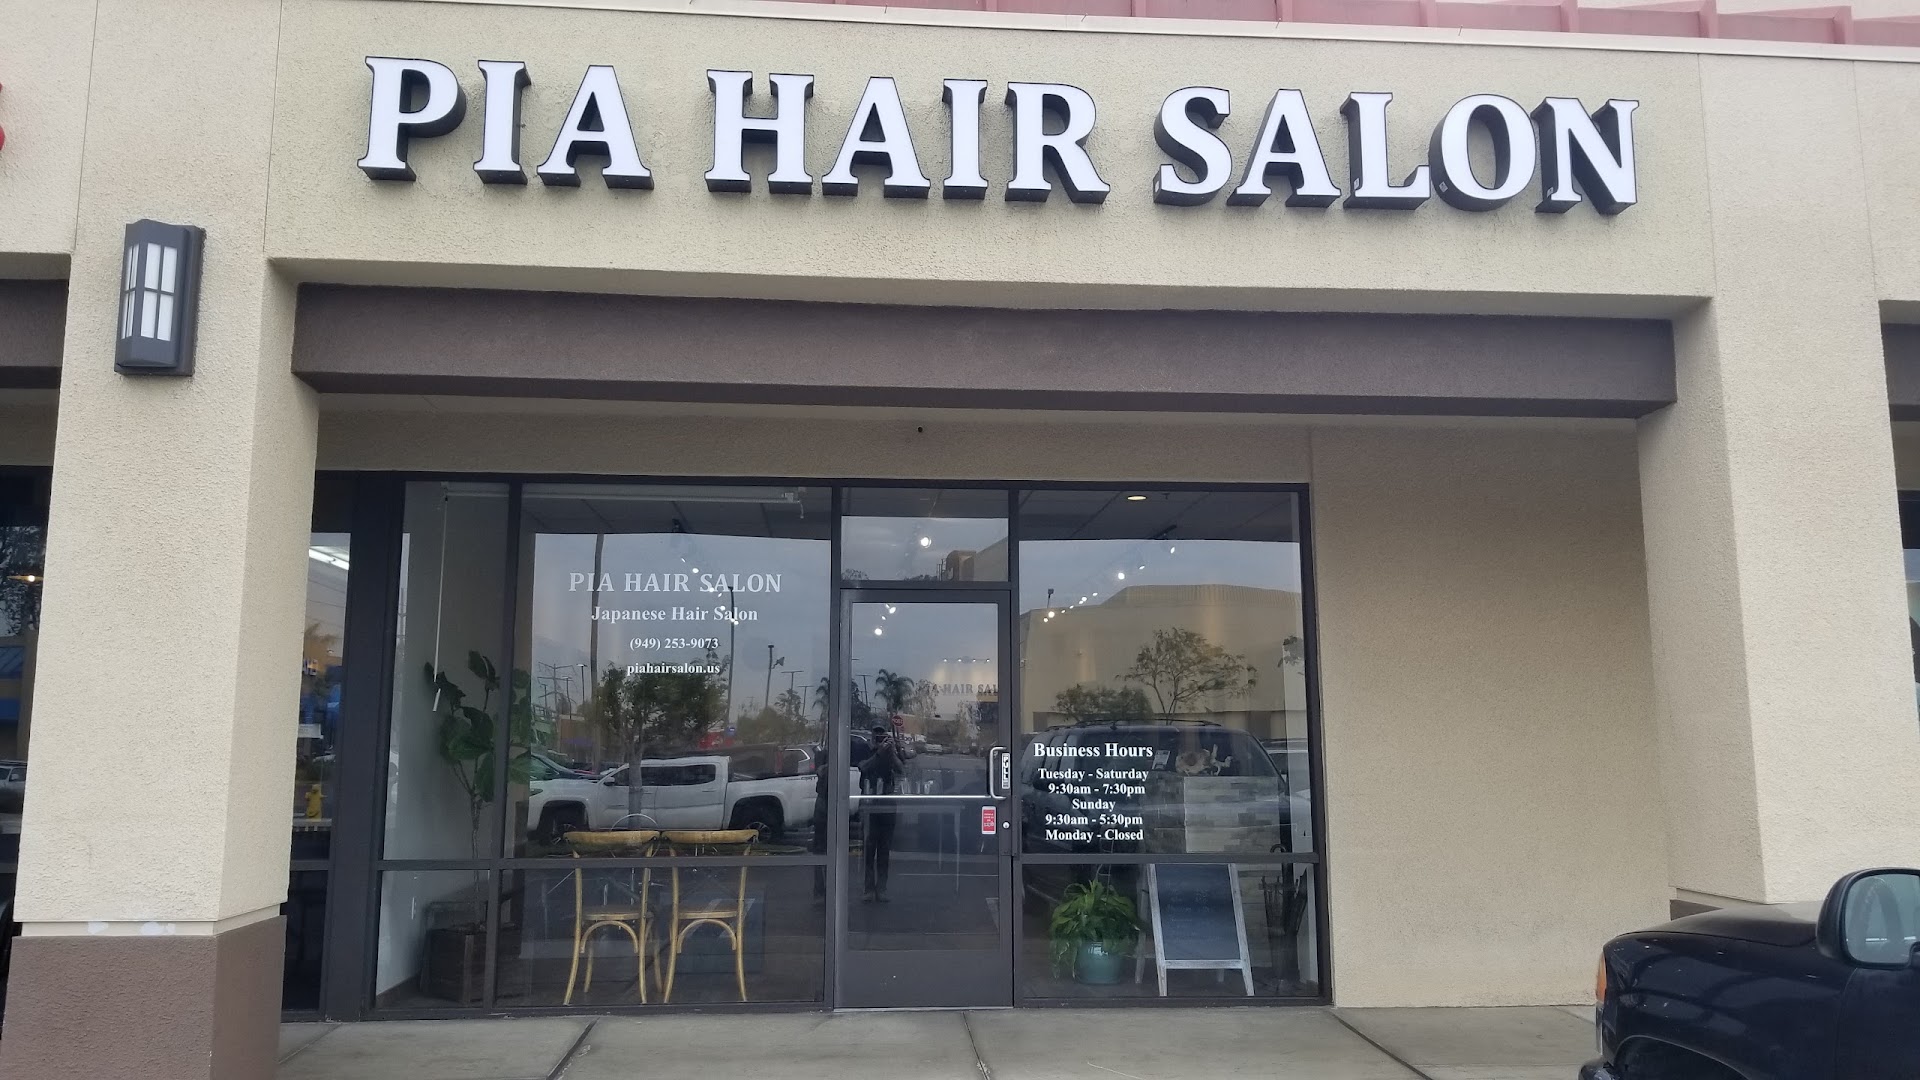 PIA hair salon